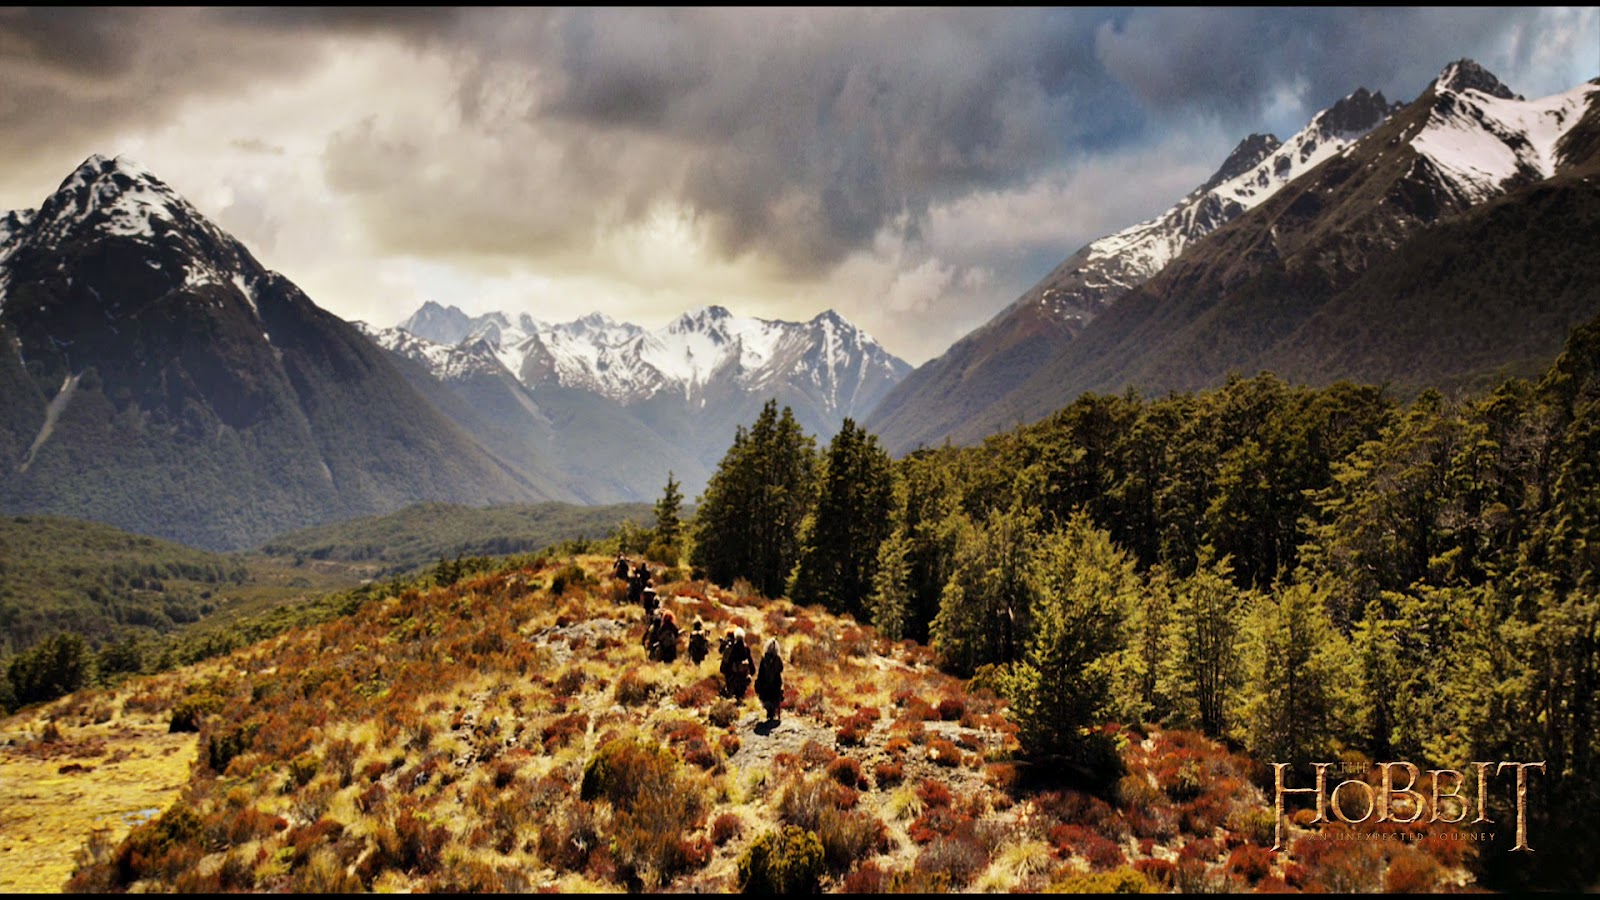 The Hobbit: The Desolation of Smaug 2013 - IMDb